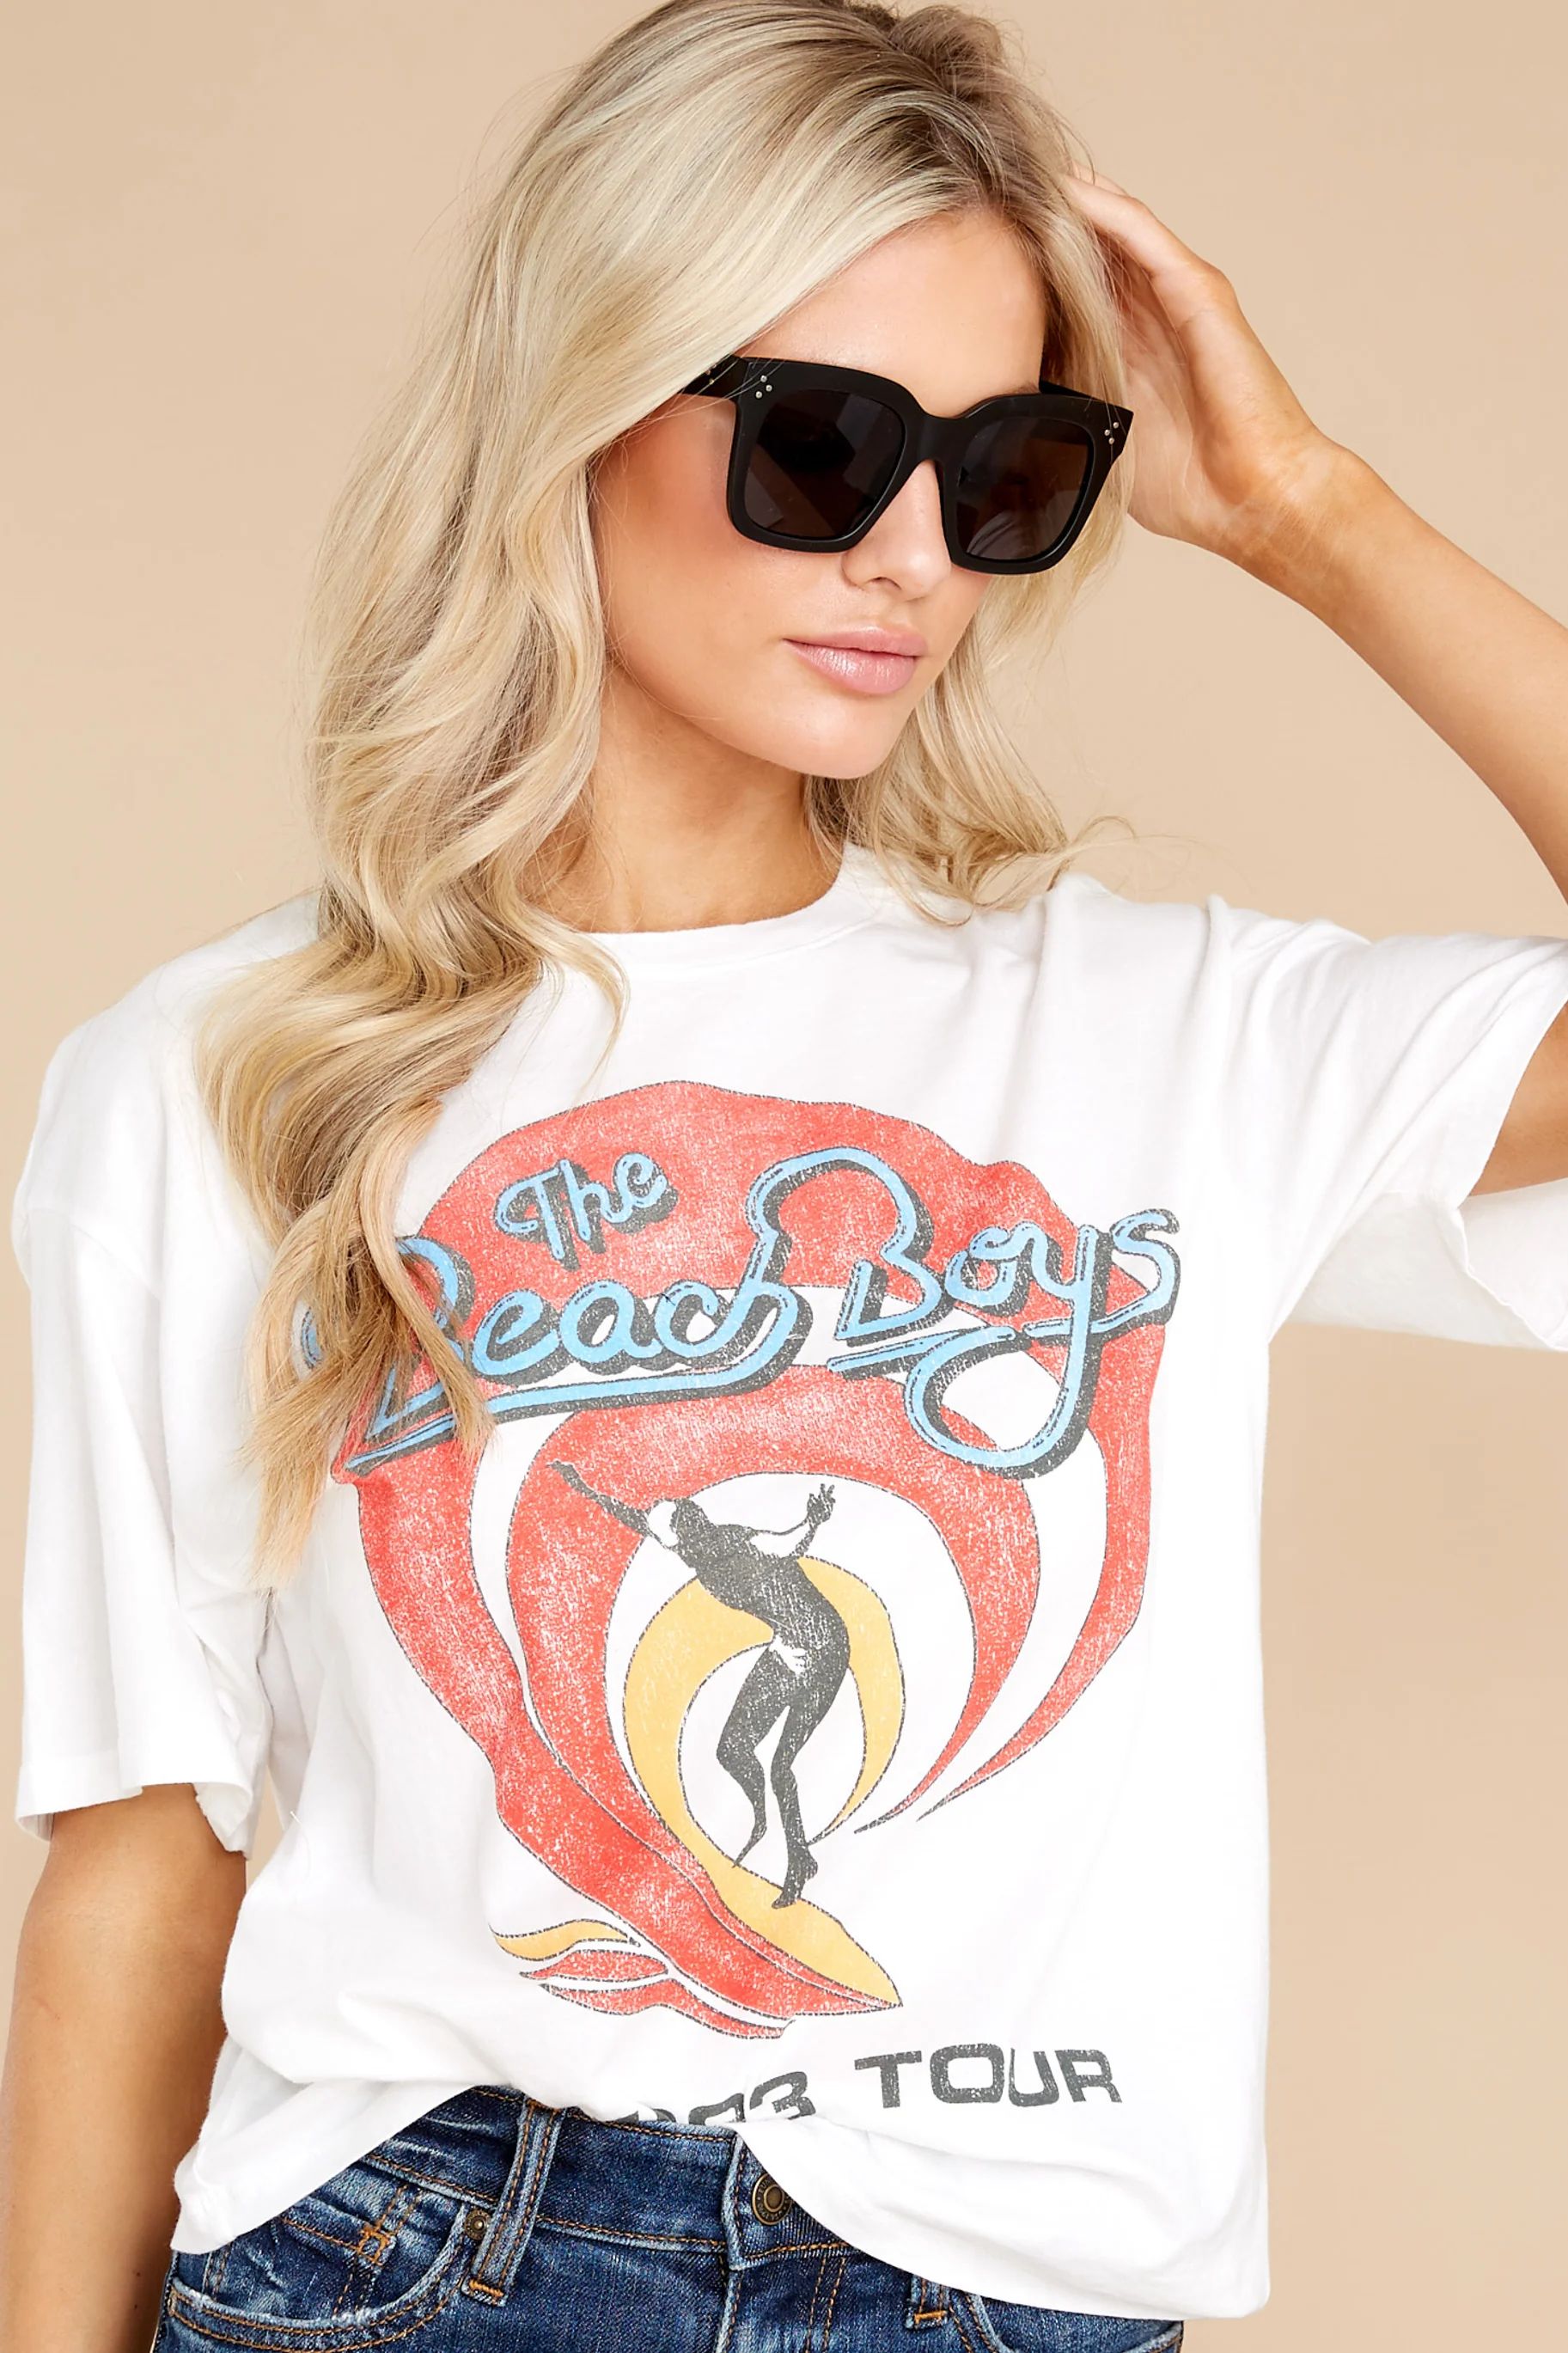 The Beach Boys 1983 Vintage White Tour Tee | Red Dress 